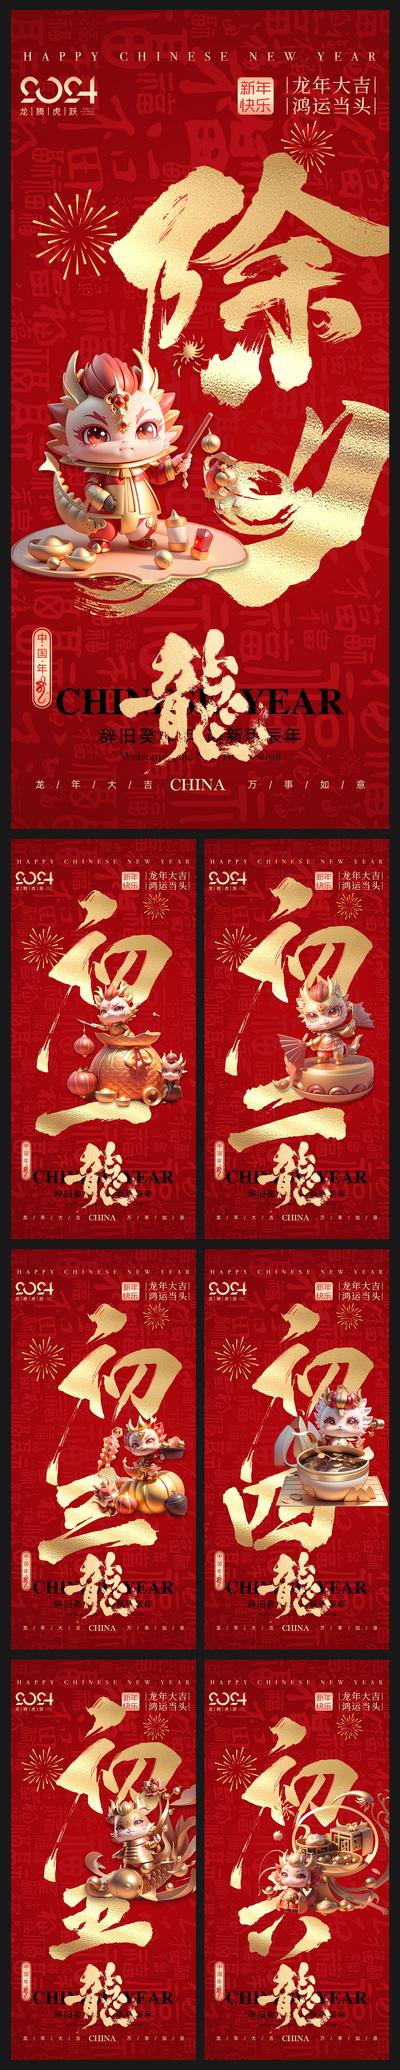 【南门网】广告 海报 新年 春节 除夕 大年初一 初一 初七 拜年 年俗 年味 系列 龙年